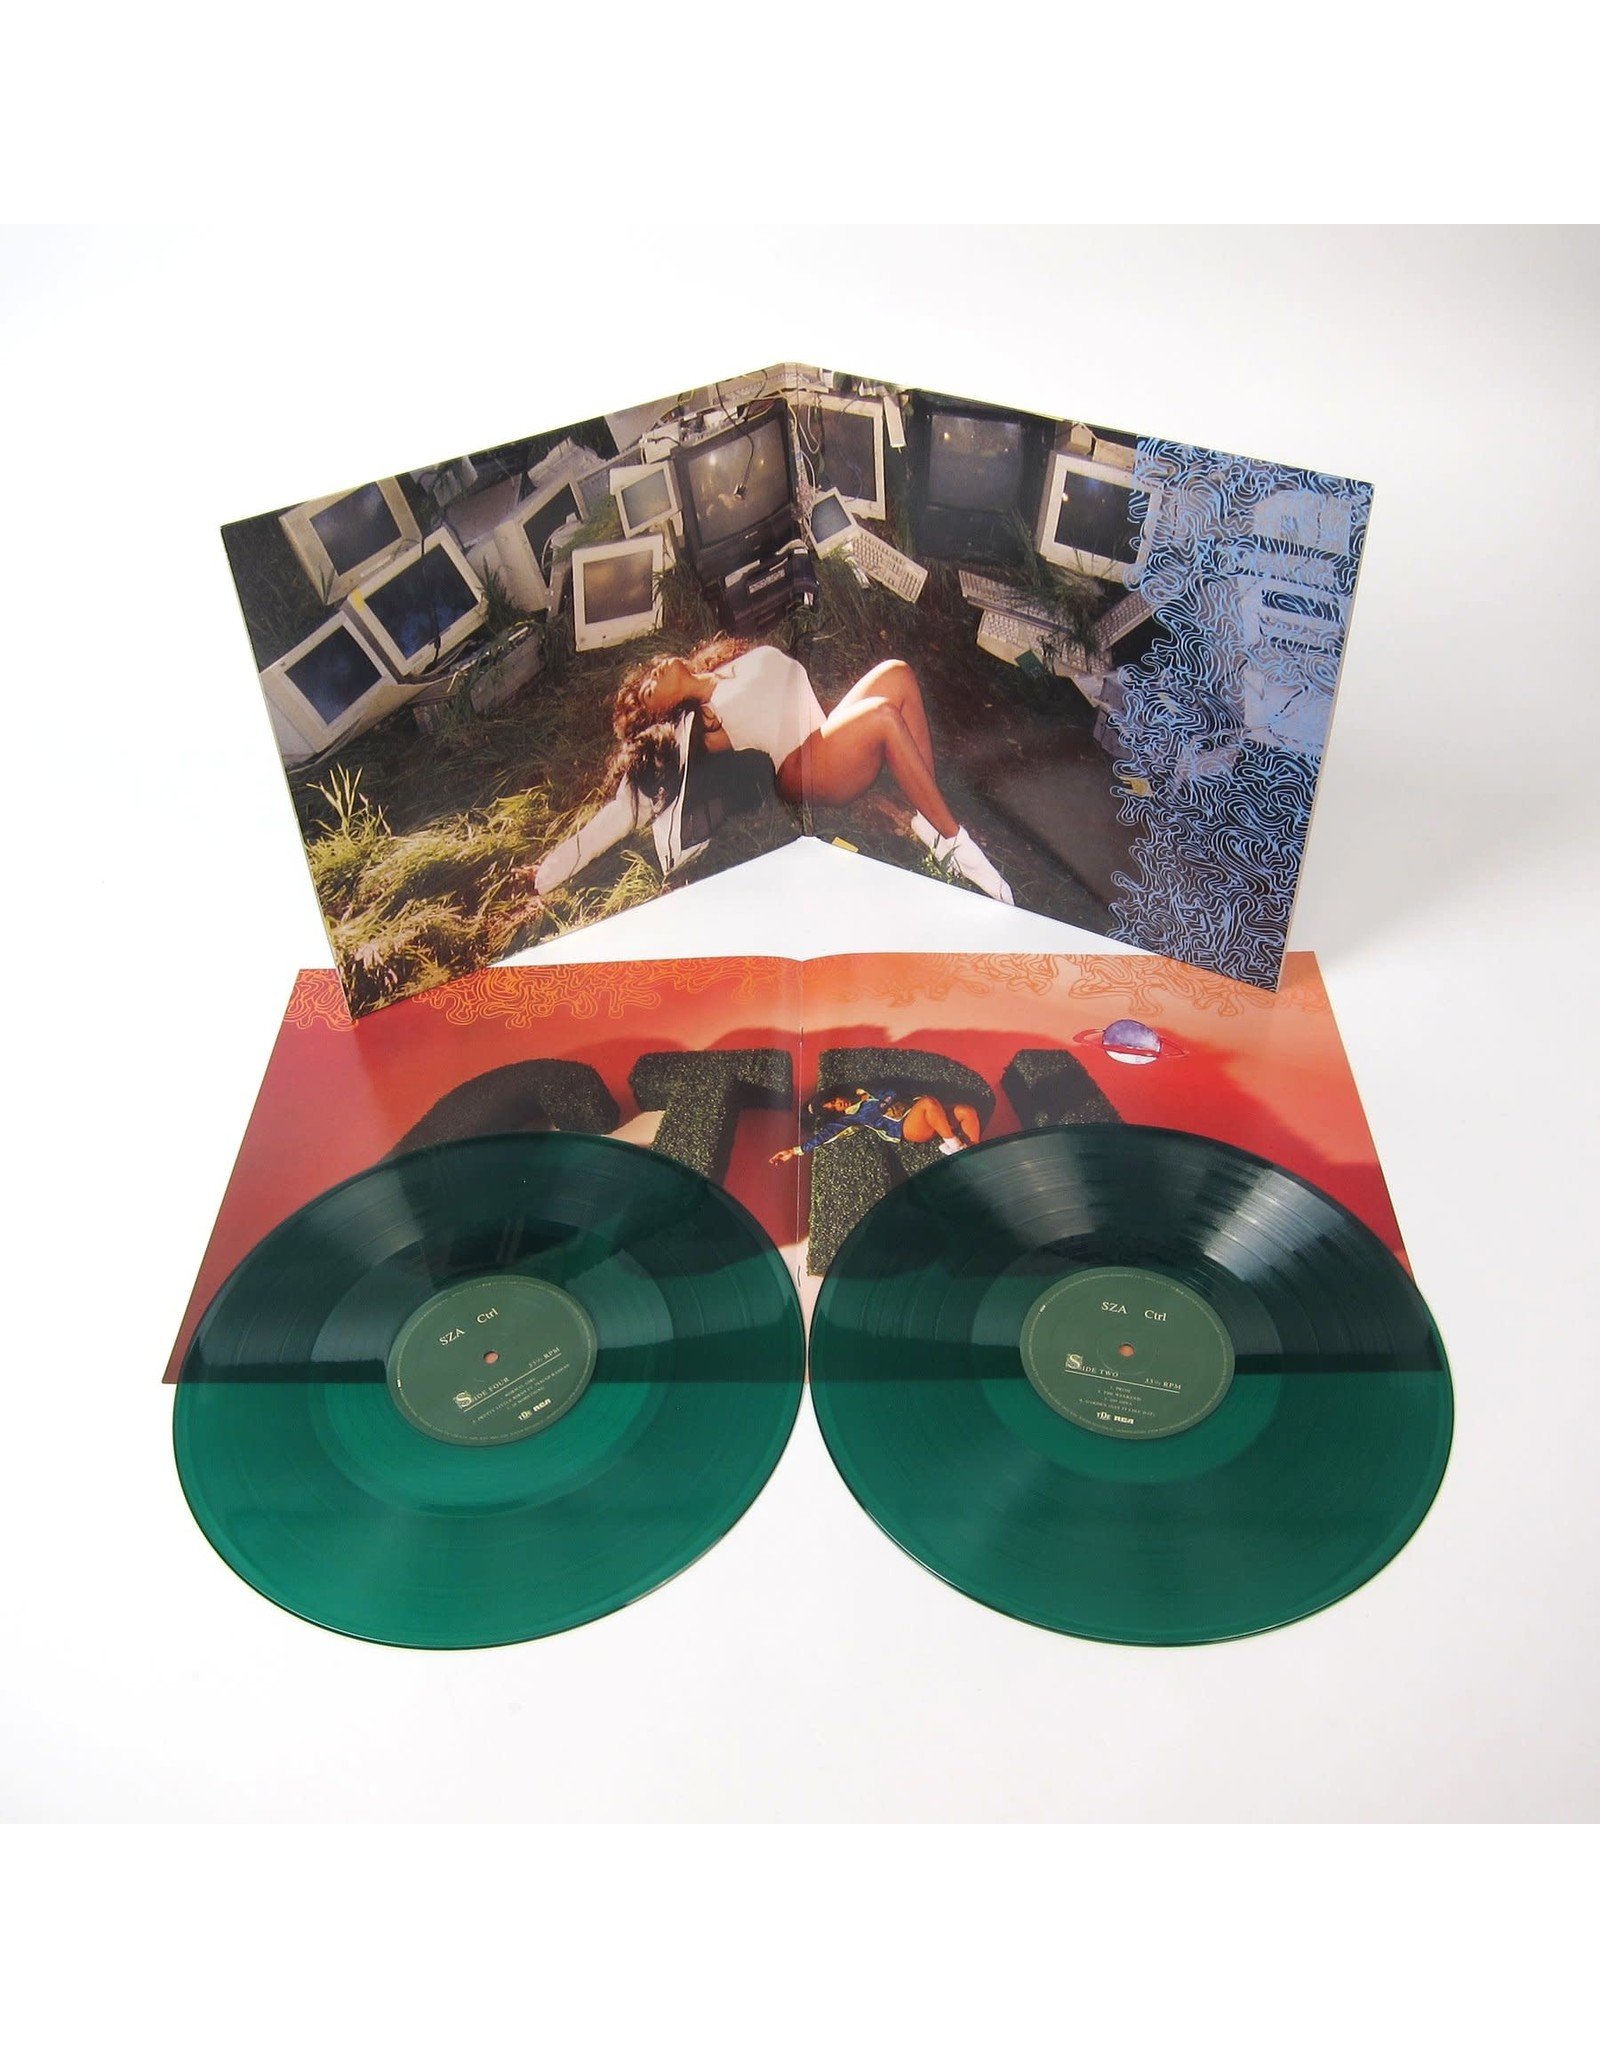 SZA - Ctrl (Green Vinyl)